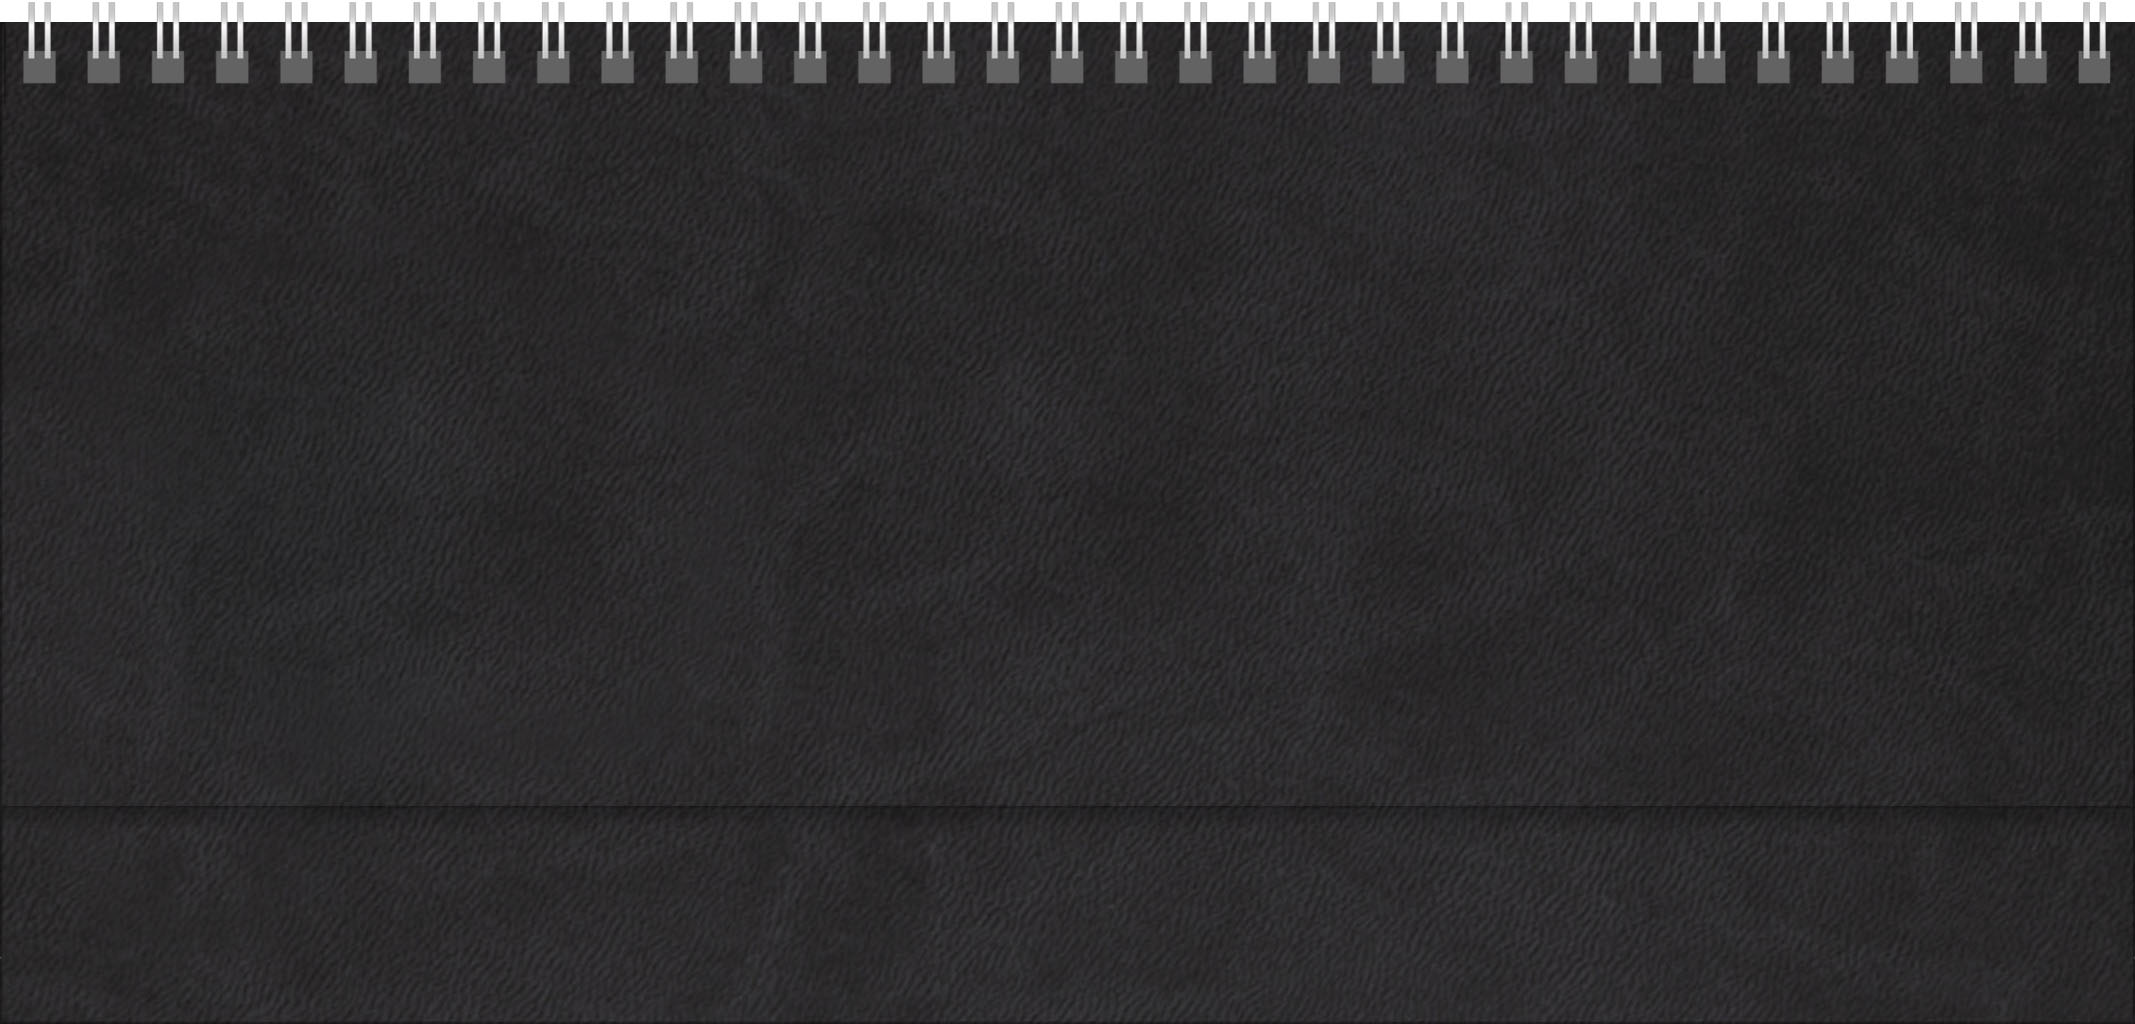 Tischquerkalender Föhr
Soft-Touch schwarz
1 Woche / 2 Seiten
Deutsch grau/blau
mit Register